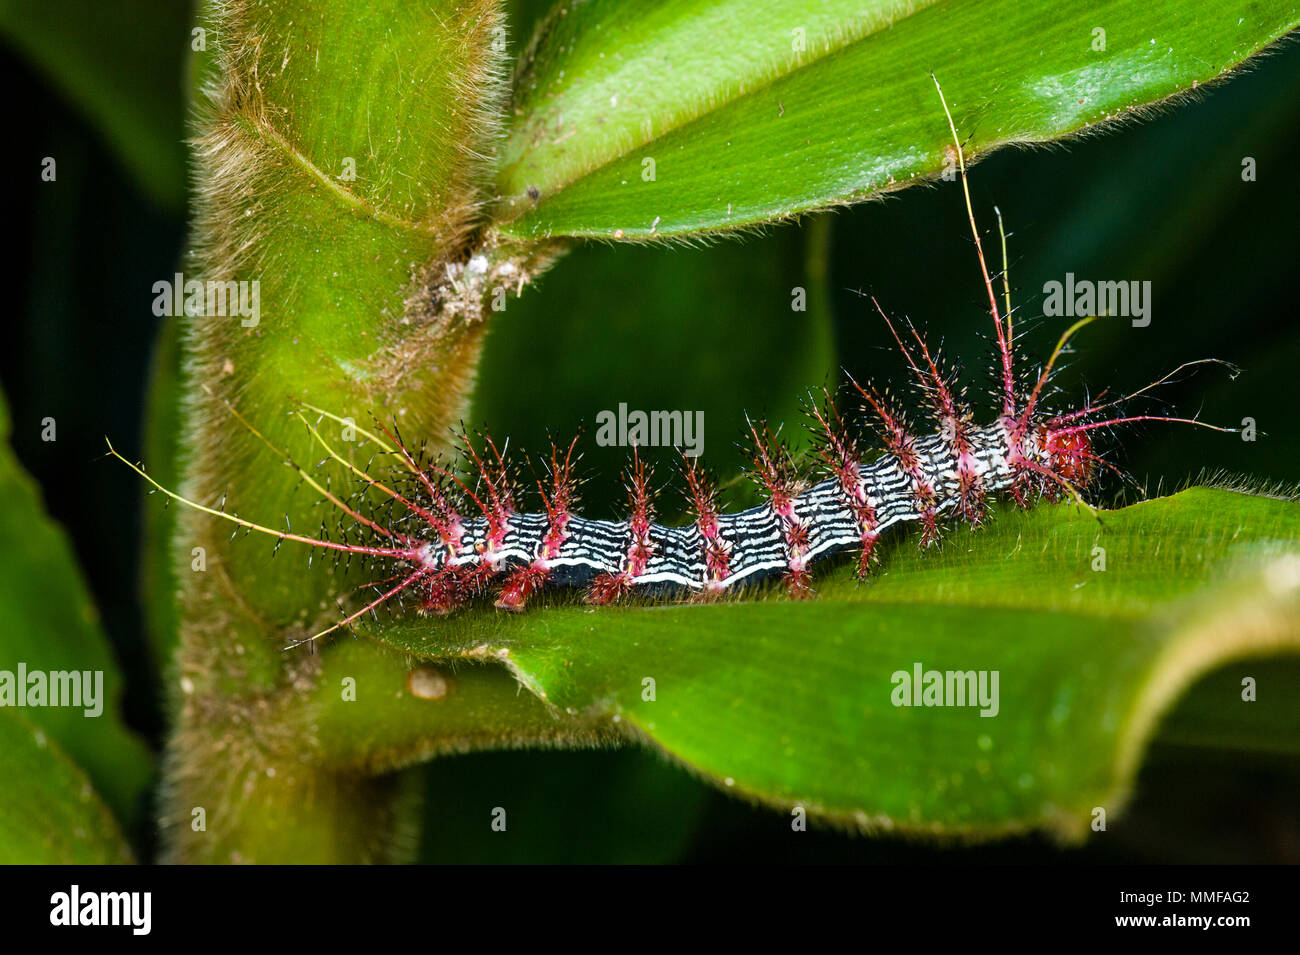 Leuchtend rote giftige Stacheln schützen eine gestreifte Caterpillar von Raubtieren während es Feeds auf ein Blatt im Regenwald. Stockfoto